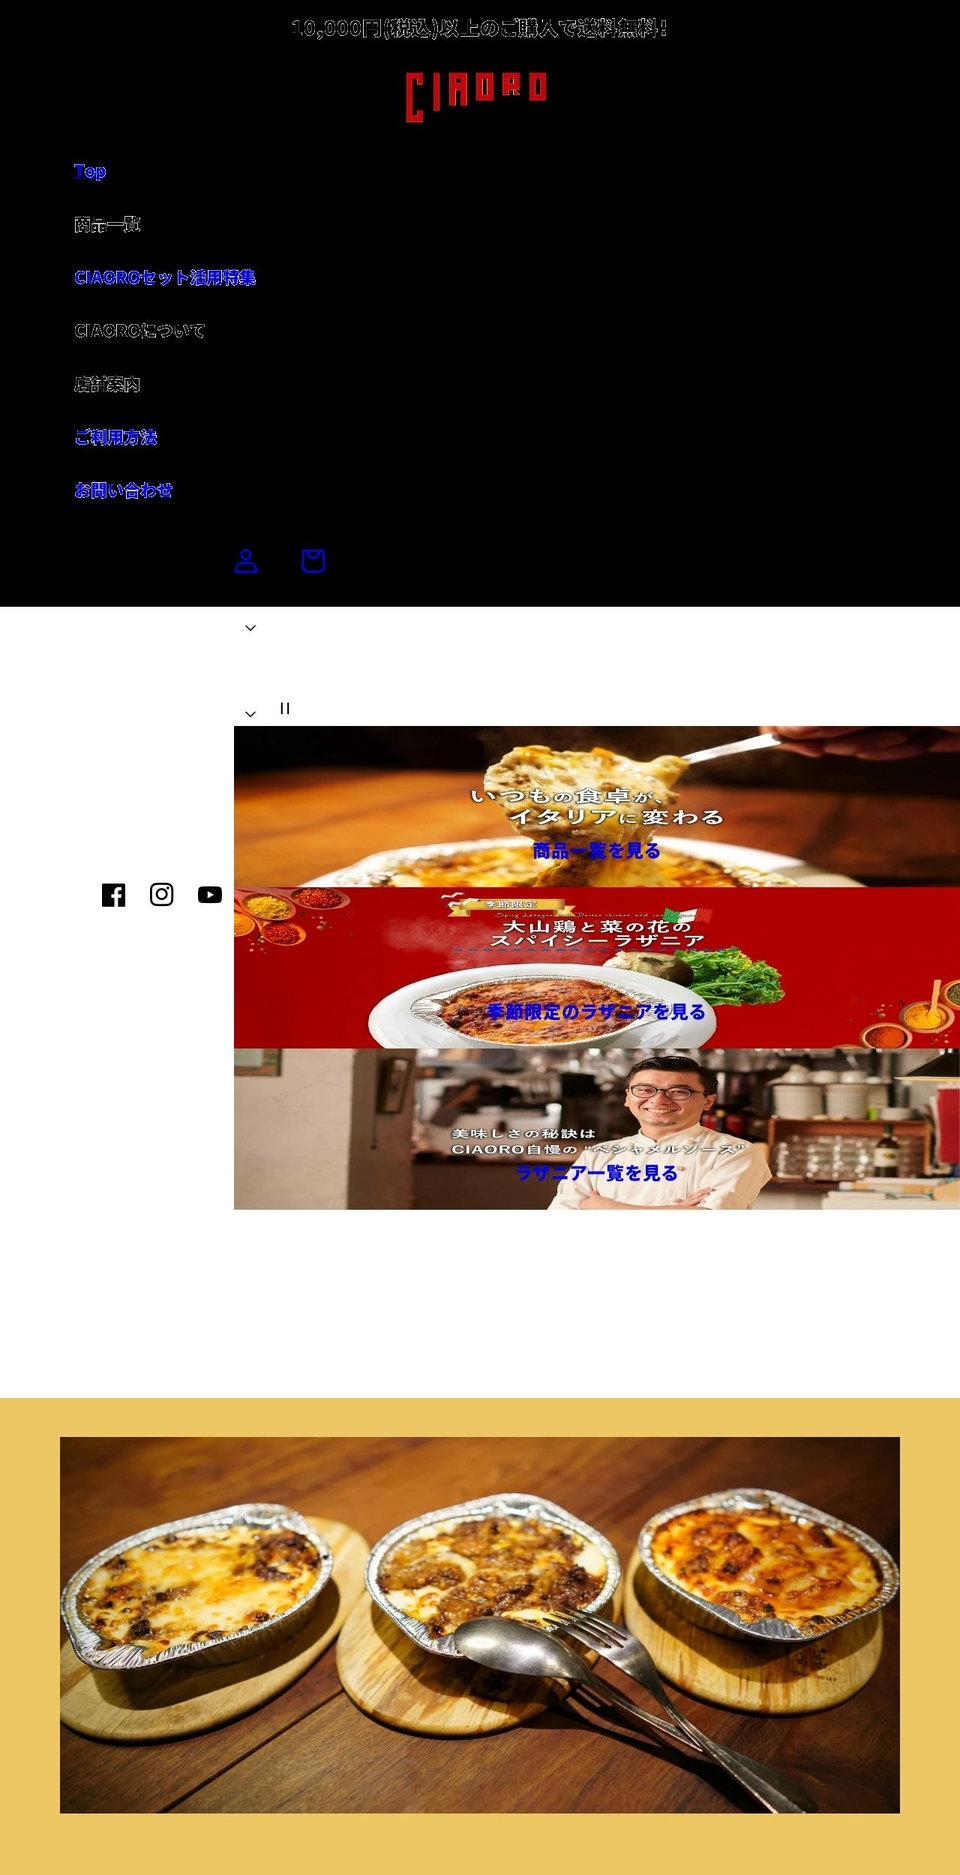 ciaoro.jp shopify website screenshot